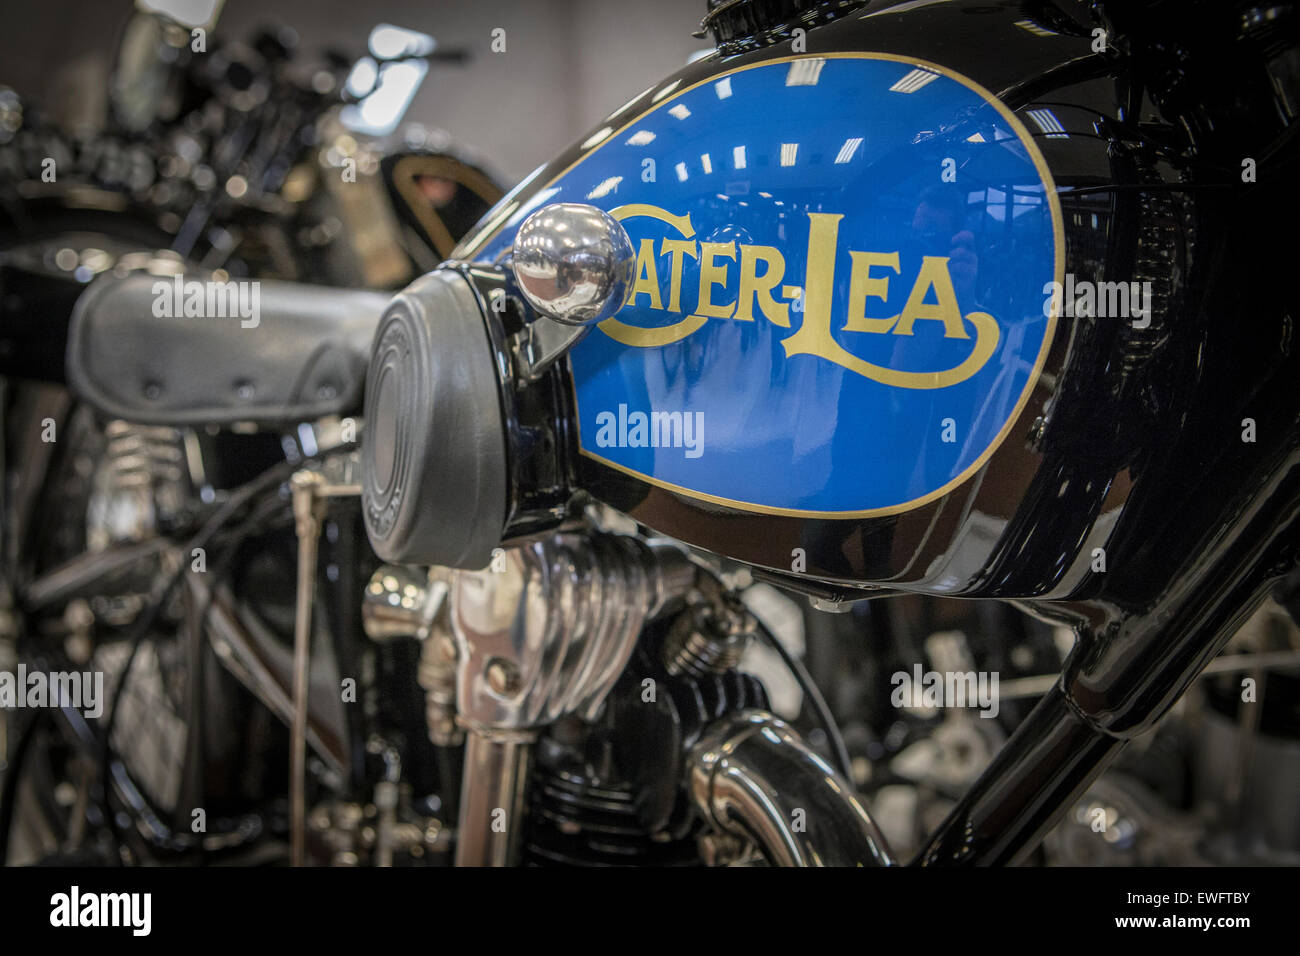 Cater-Lea motociclo classico marchio insegne Foto Stock